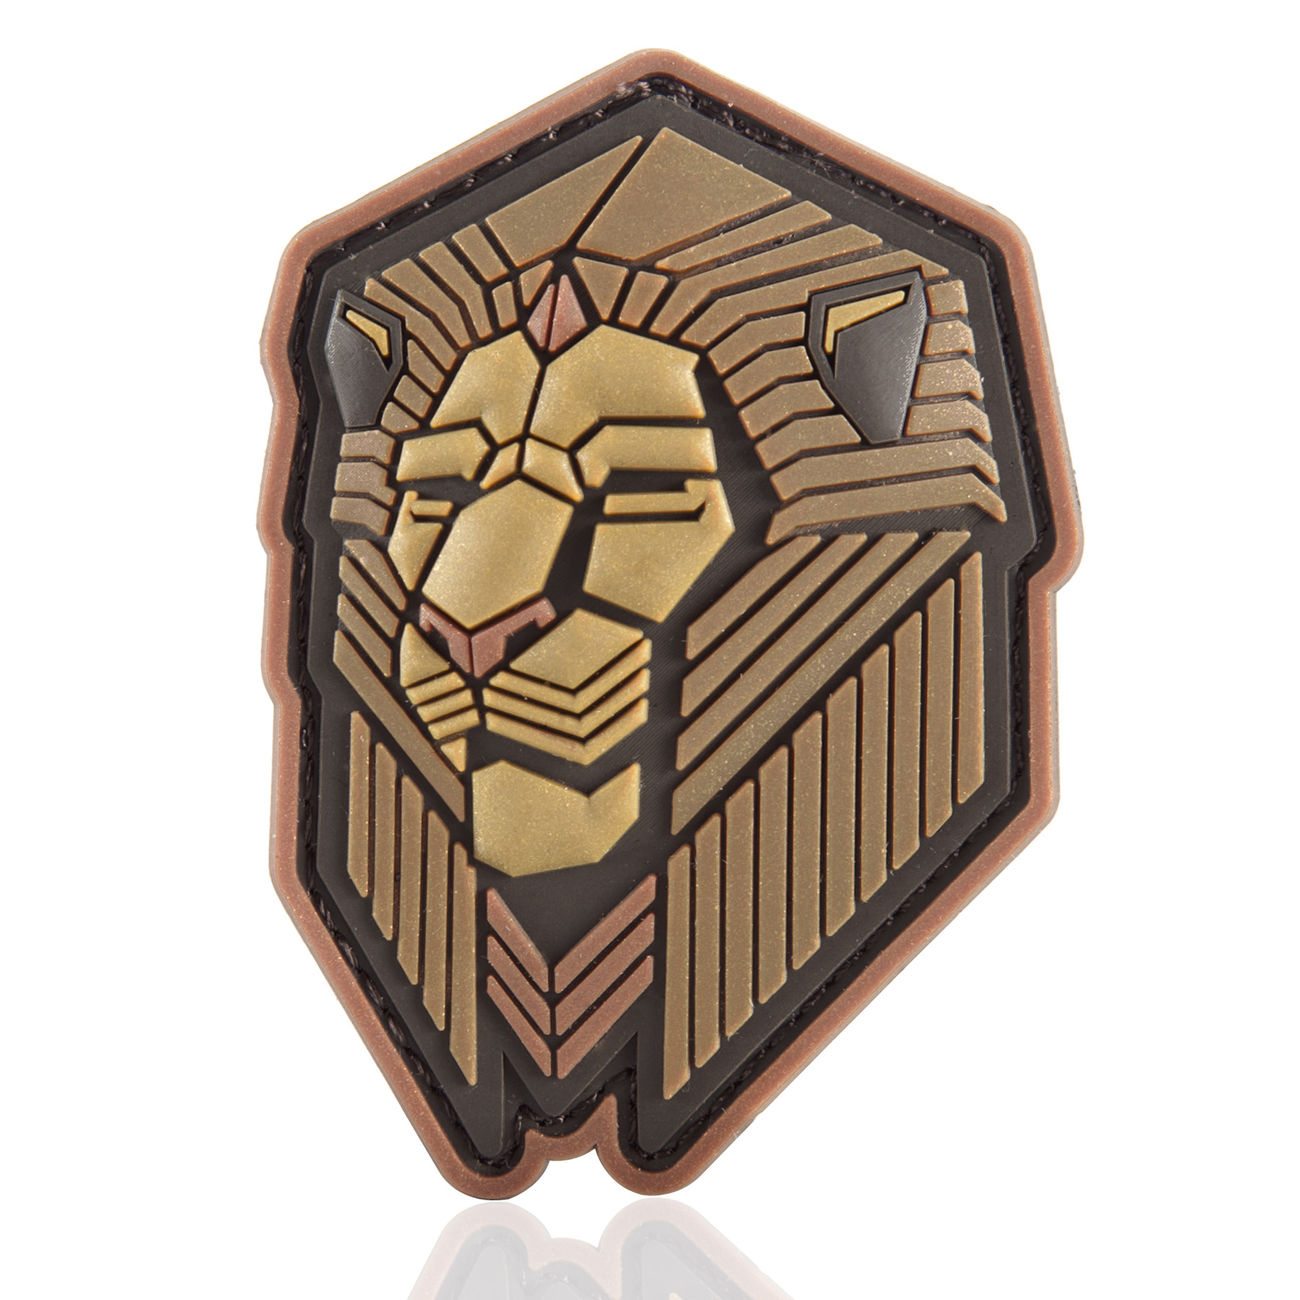   Mil-Spec Monkey 3D Rubber Patch Industrial Lion bronze